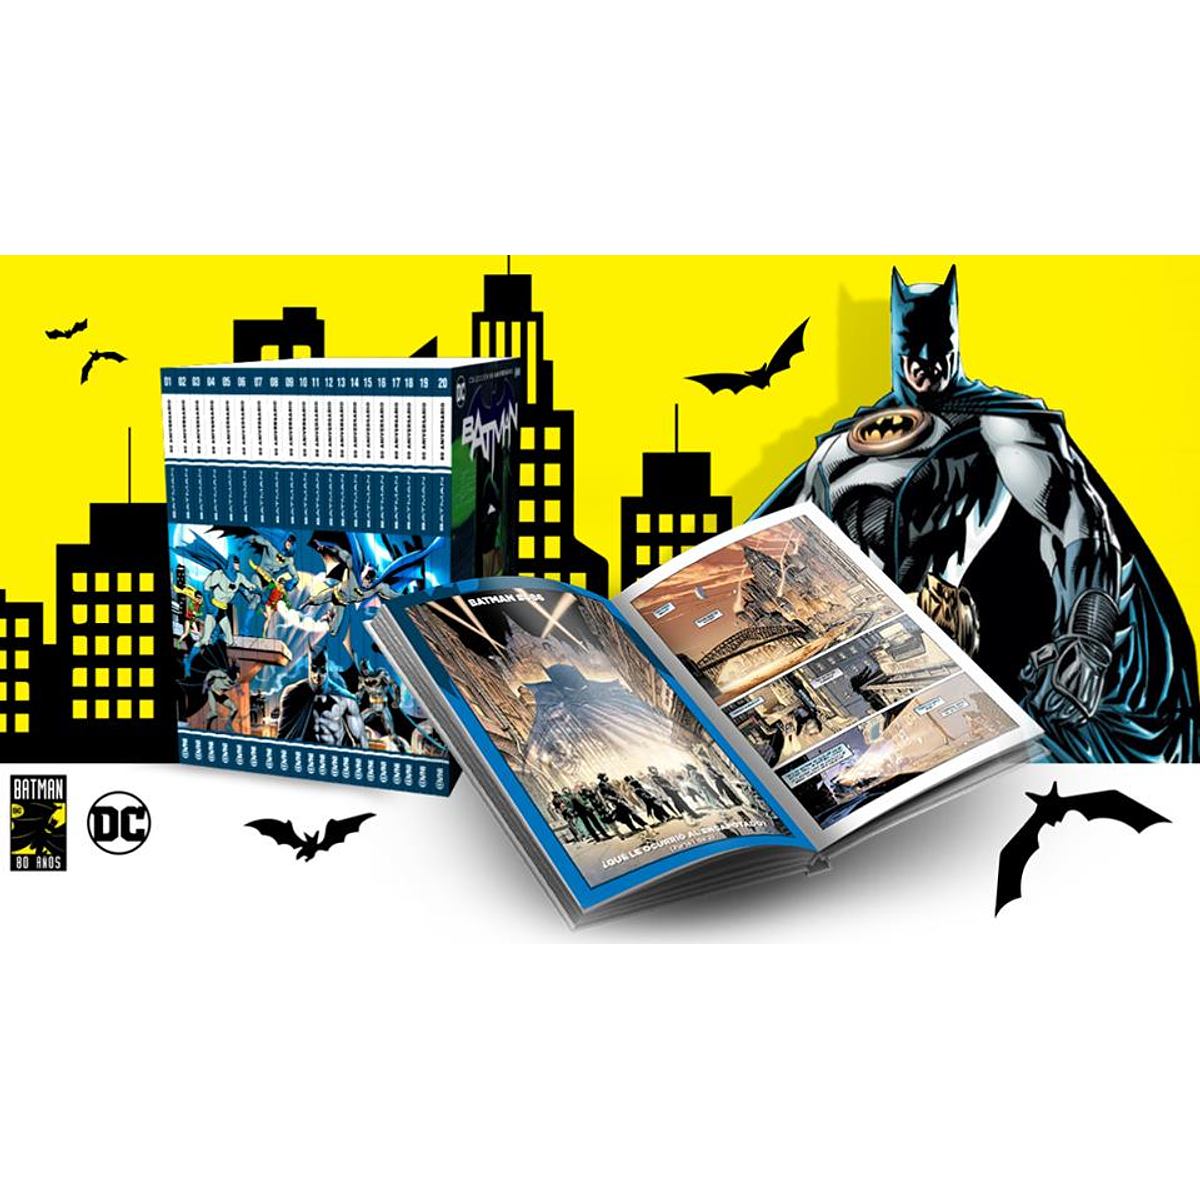 Pack Batman. Colección 80 Aniversario 1 al 20